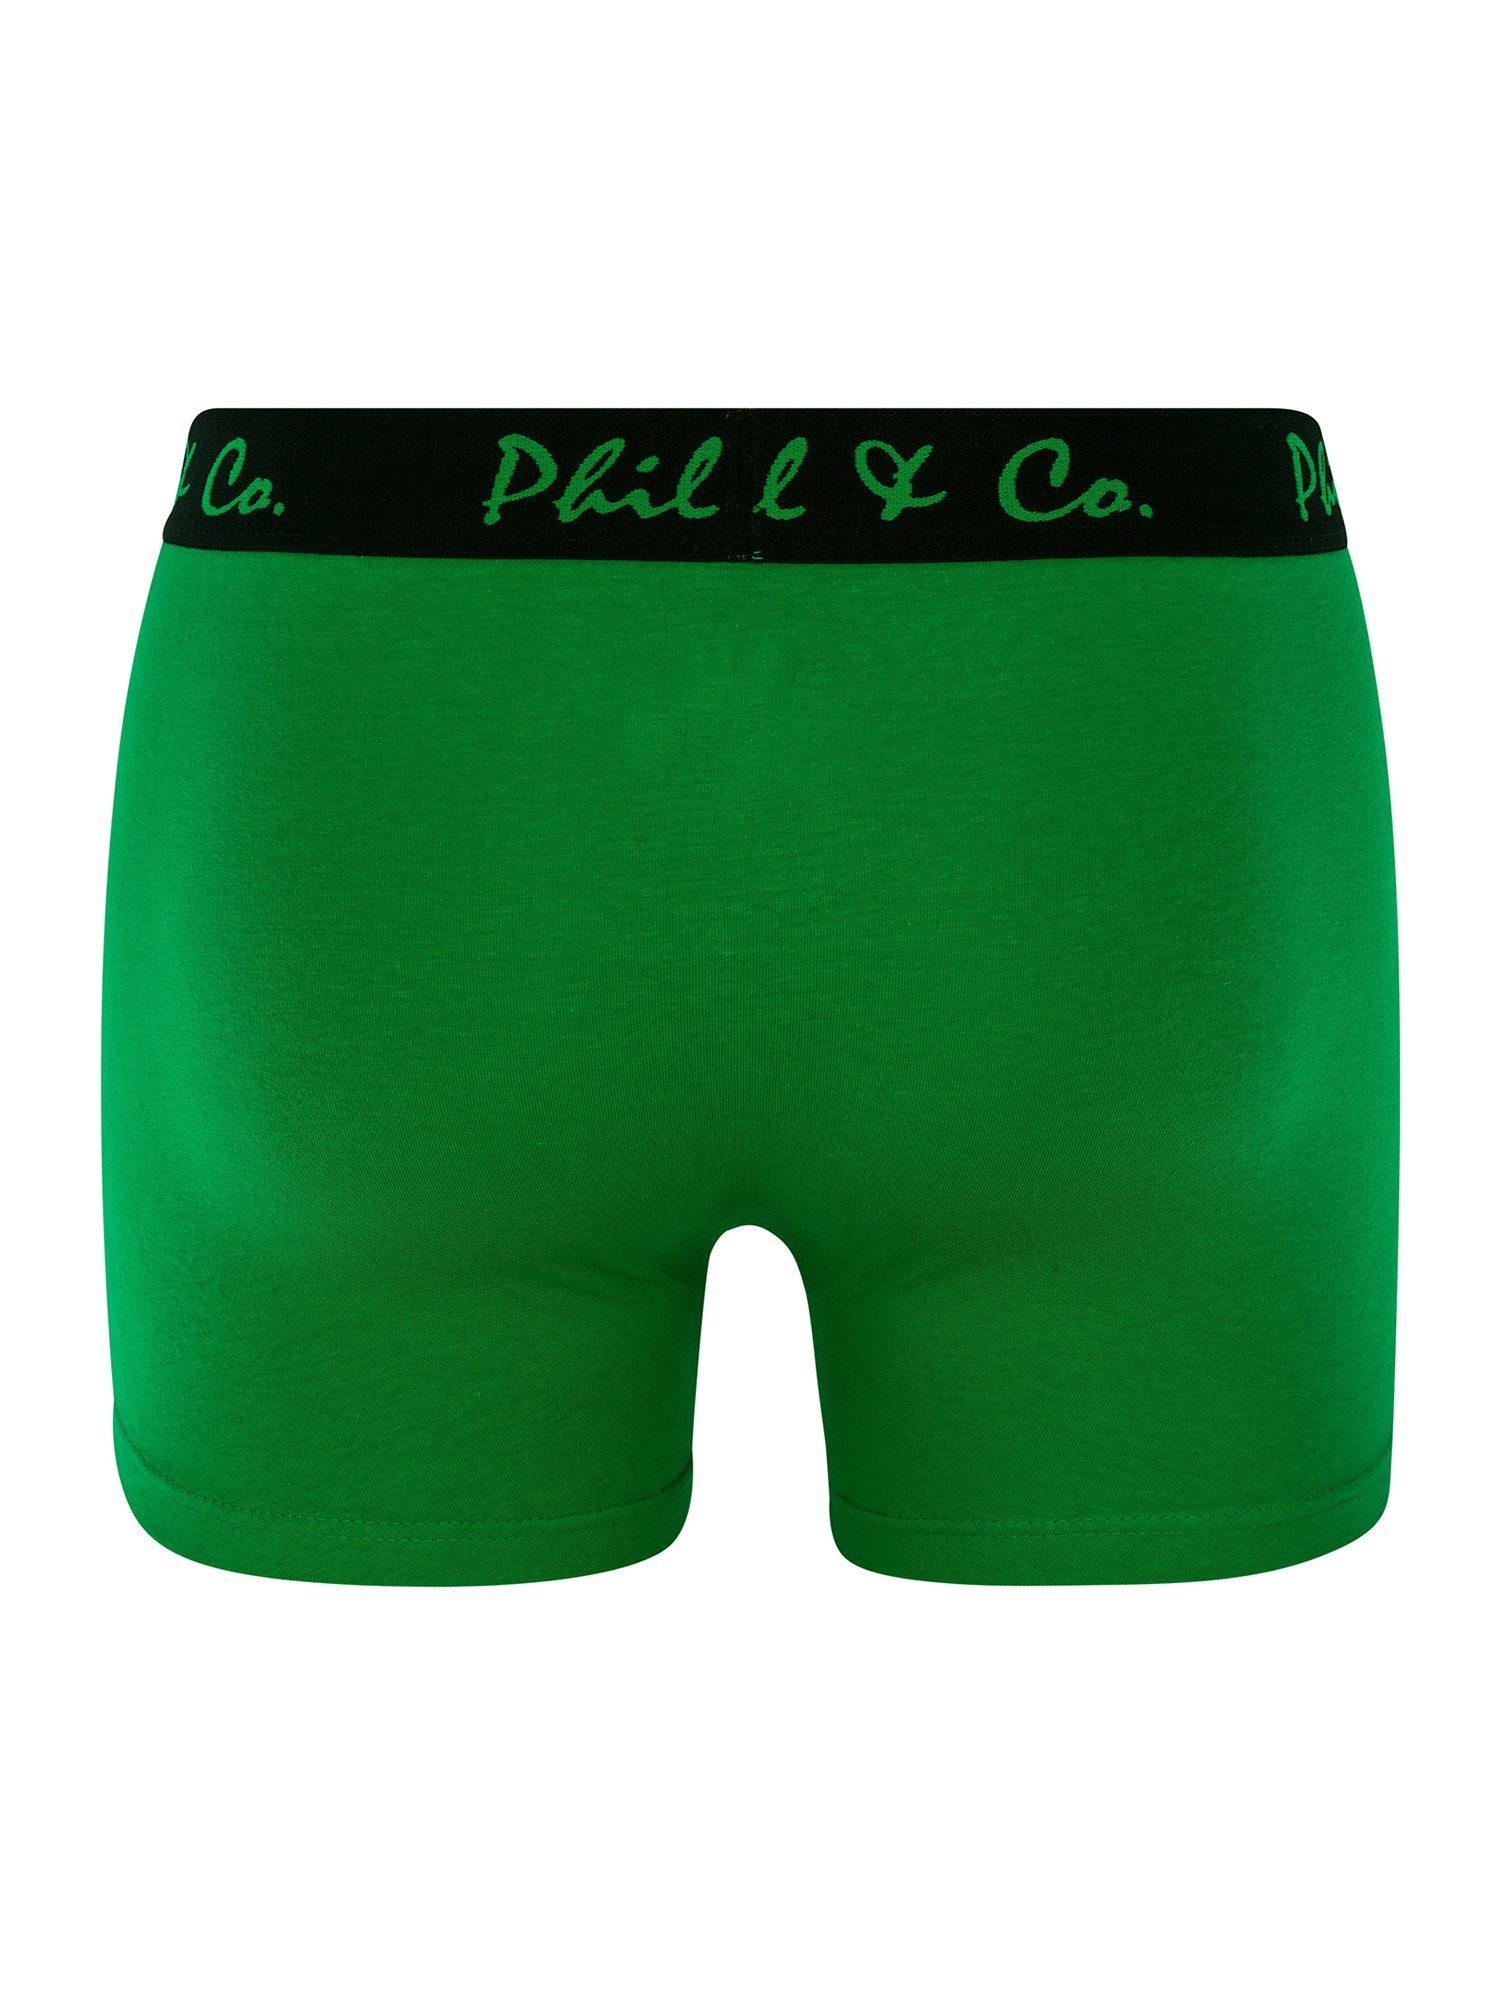 (6-St) Phil Co. Pants & grün-anthrazit Jersey Retro